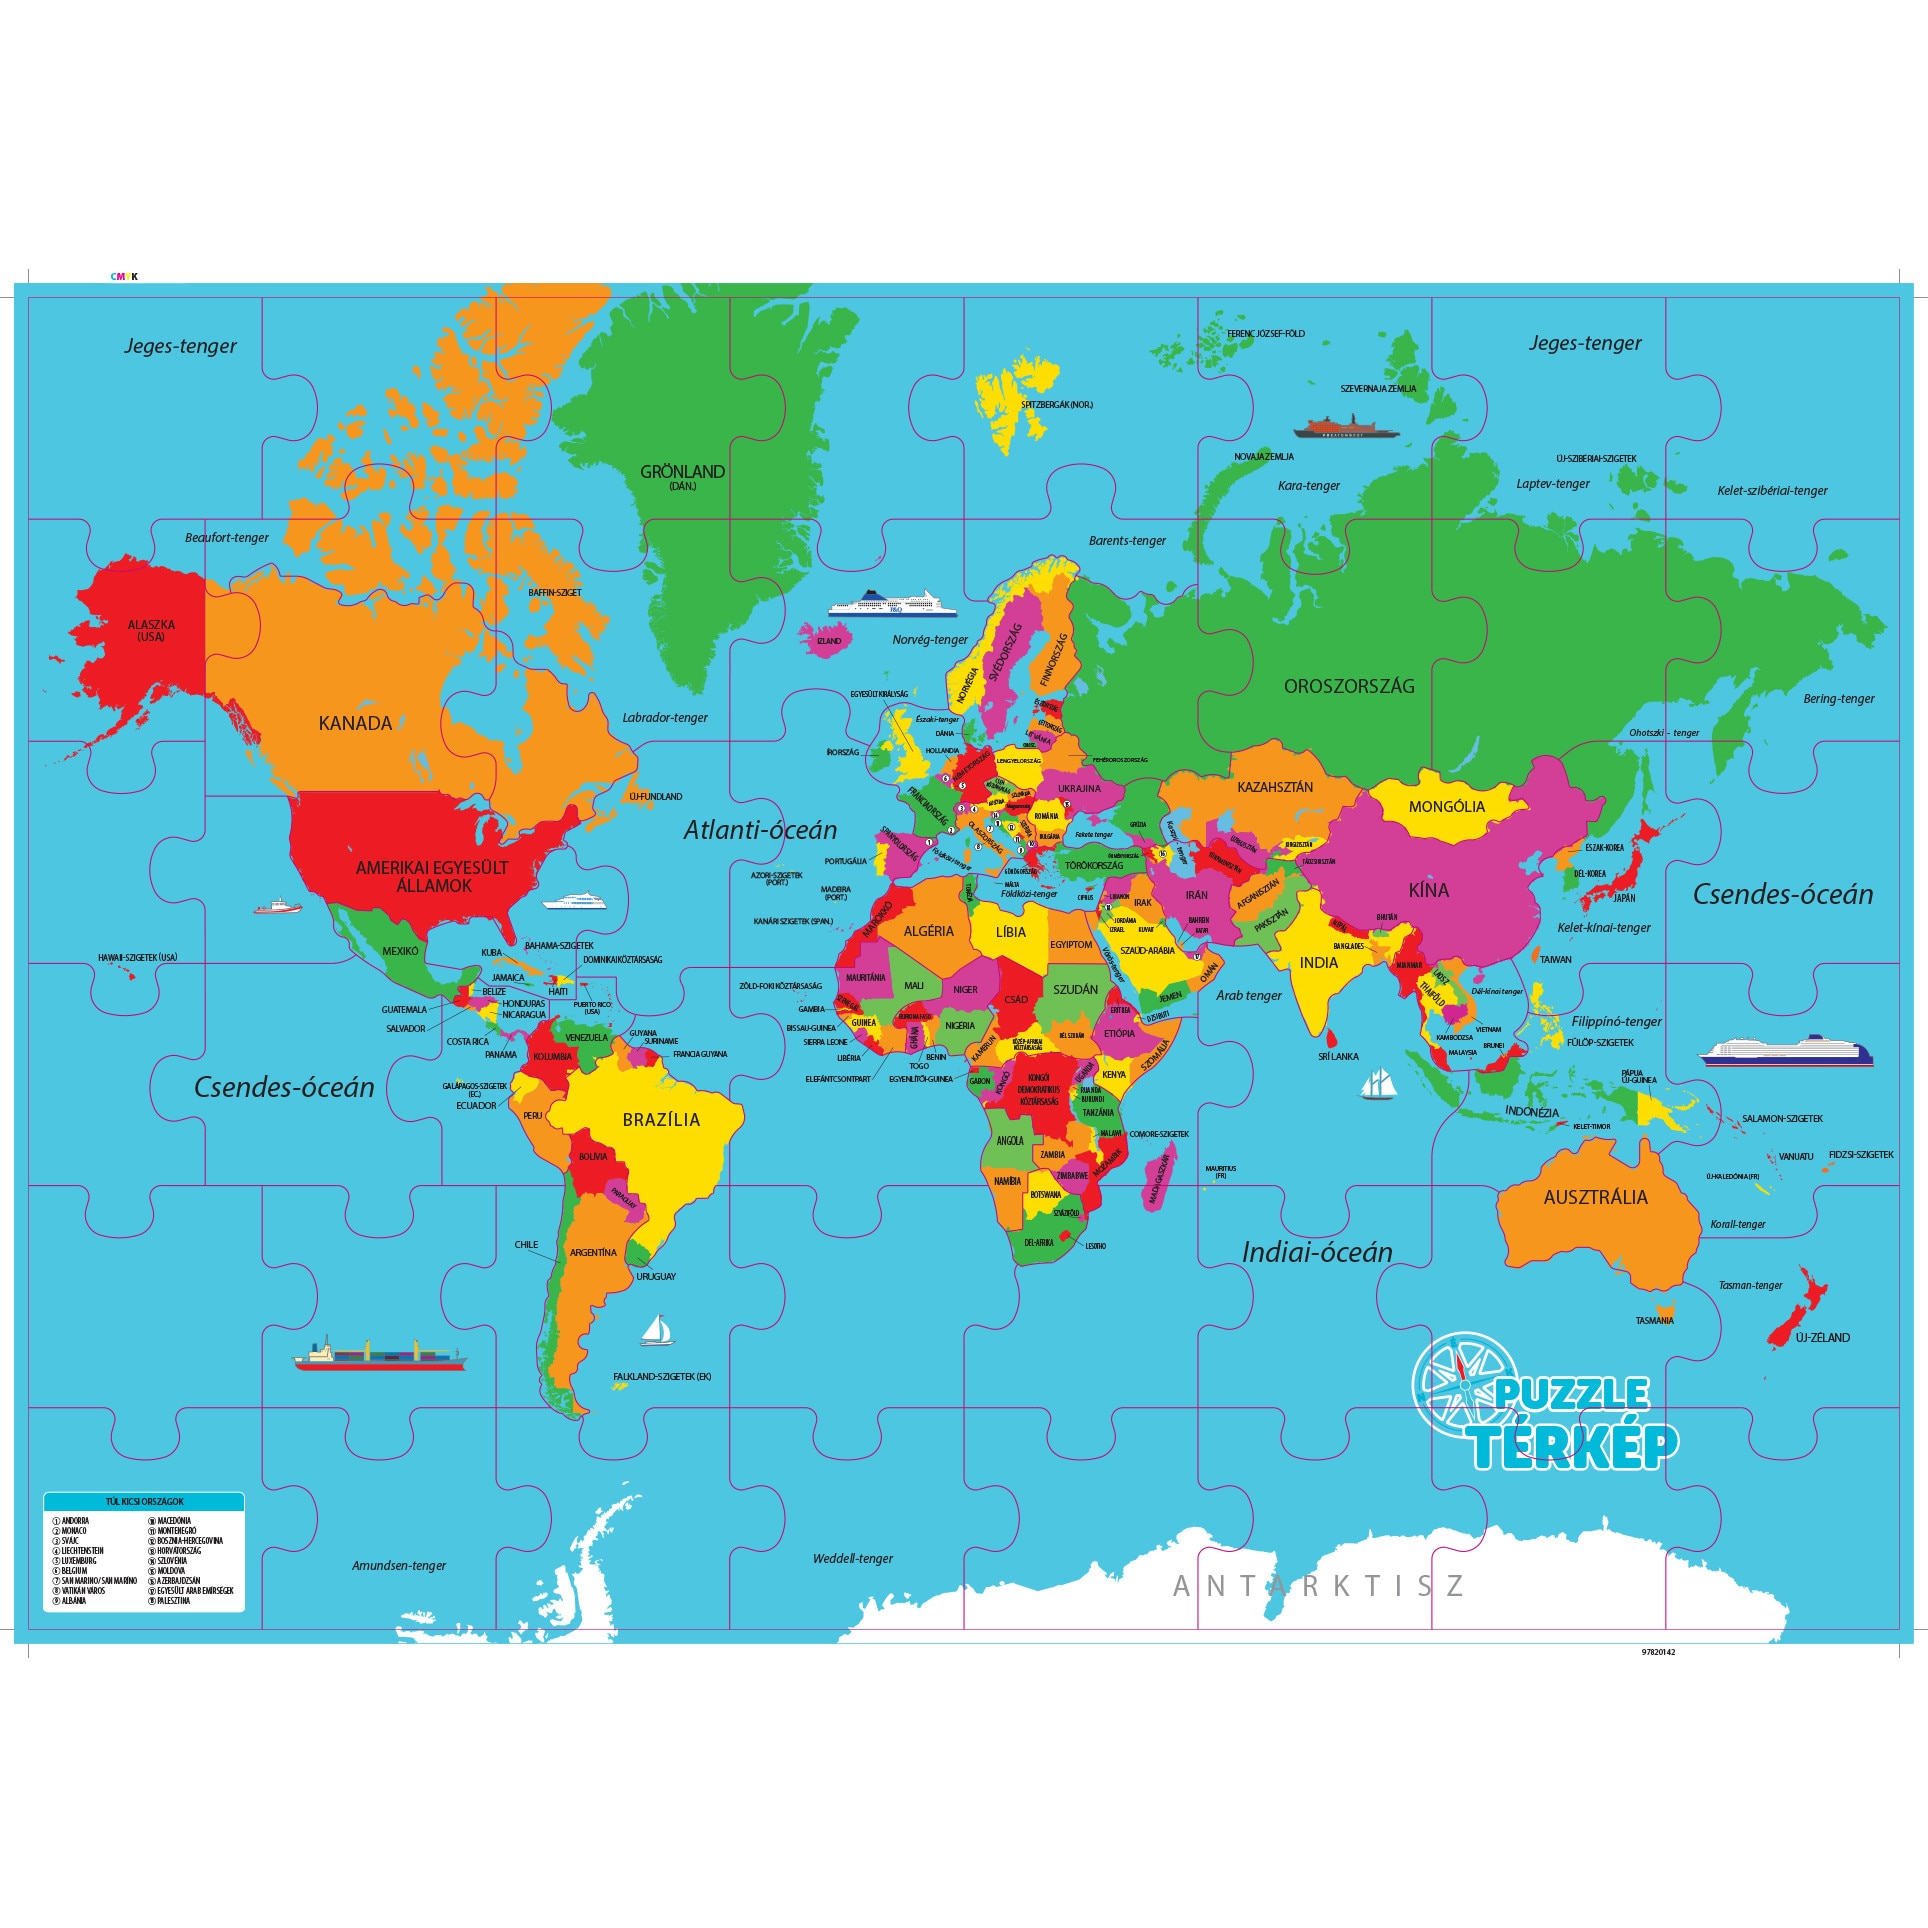 világ térkép Regio 62225 Világ térkép magyarul 48 darabos puzzle   eMAG.hu